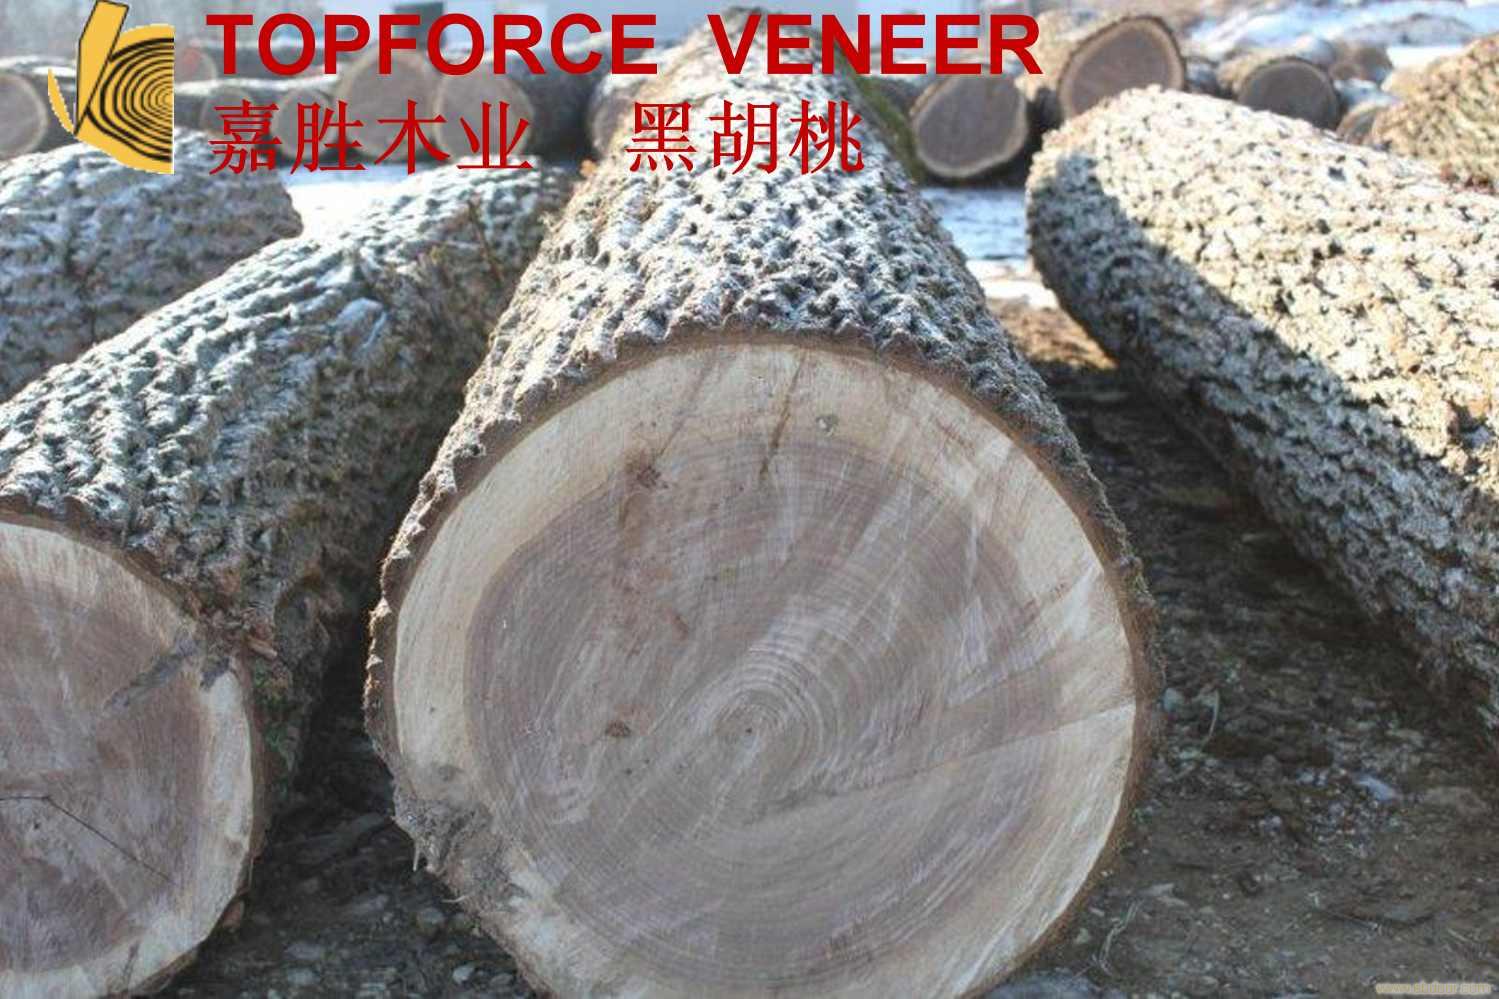 上海美国黑胡桃原木,二面清,三面清锯切级,三面清旋切级和四面清刨切级,锯切实木地板,框切实木地板,旋切木皮